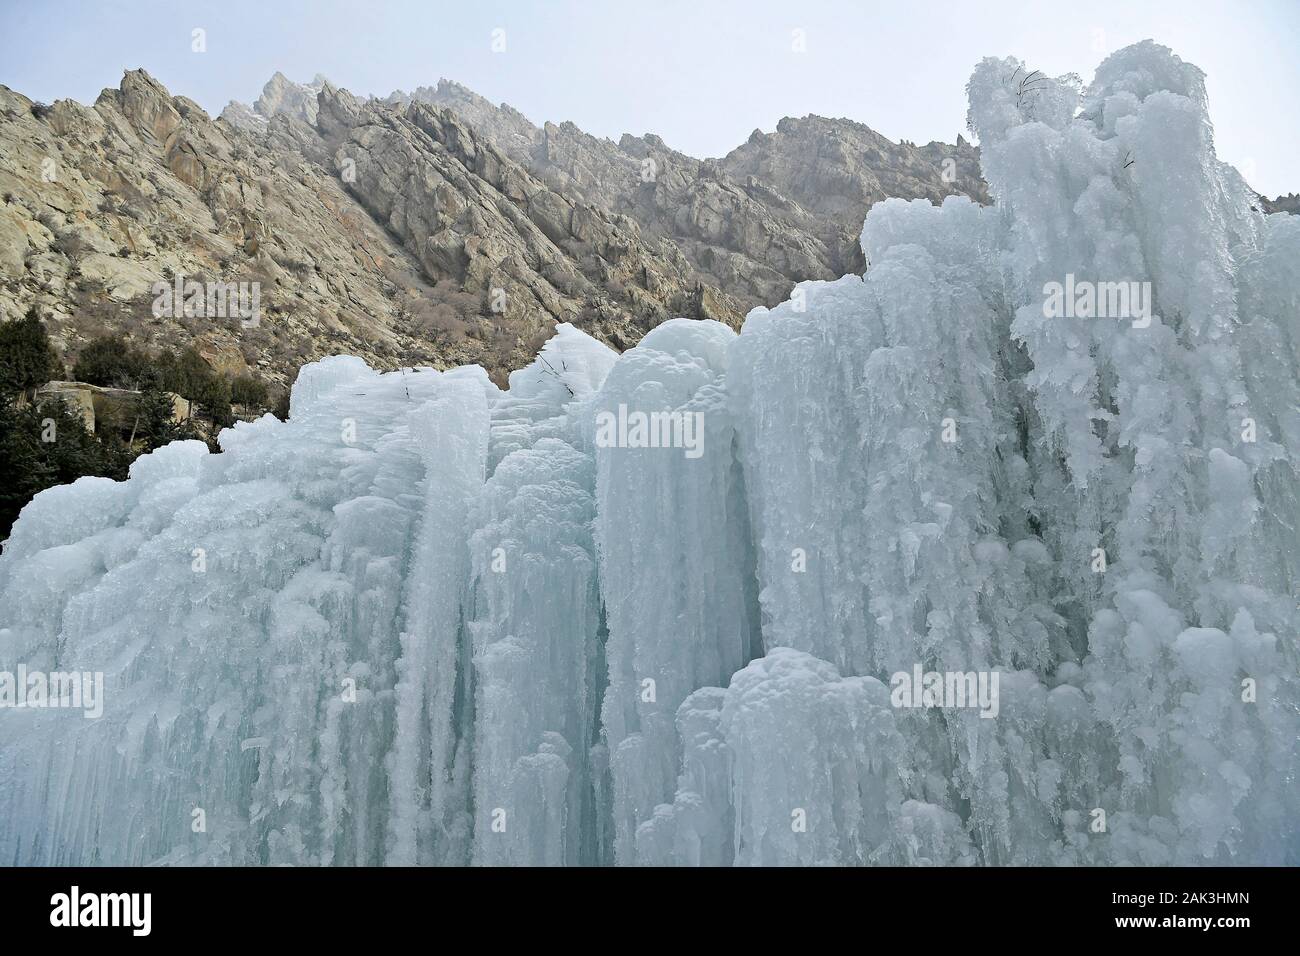 Yinchuan. Jan 7, 2020. Photo prise le 7 janvier 2020 montre la cascade de glace à l'endroit pittoresque peinture falaise de montagnes Helan à Yinchuan, Chine du nord-ouest de la région autonome du Ningxia Hui. Credit : Wang Peng/Xinhua/Alamy Live News Banque D'Images